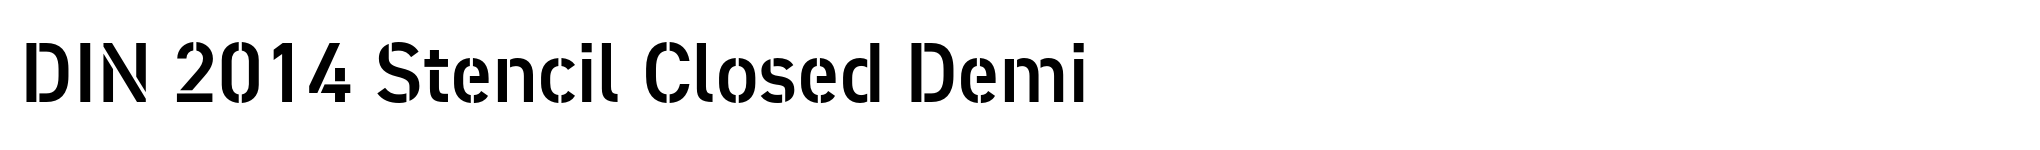 DIN 2014 Stencil Closed Demi image